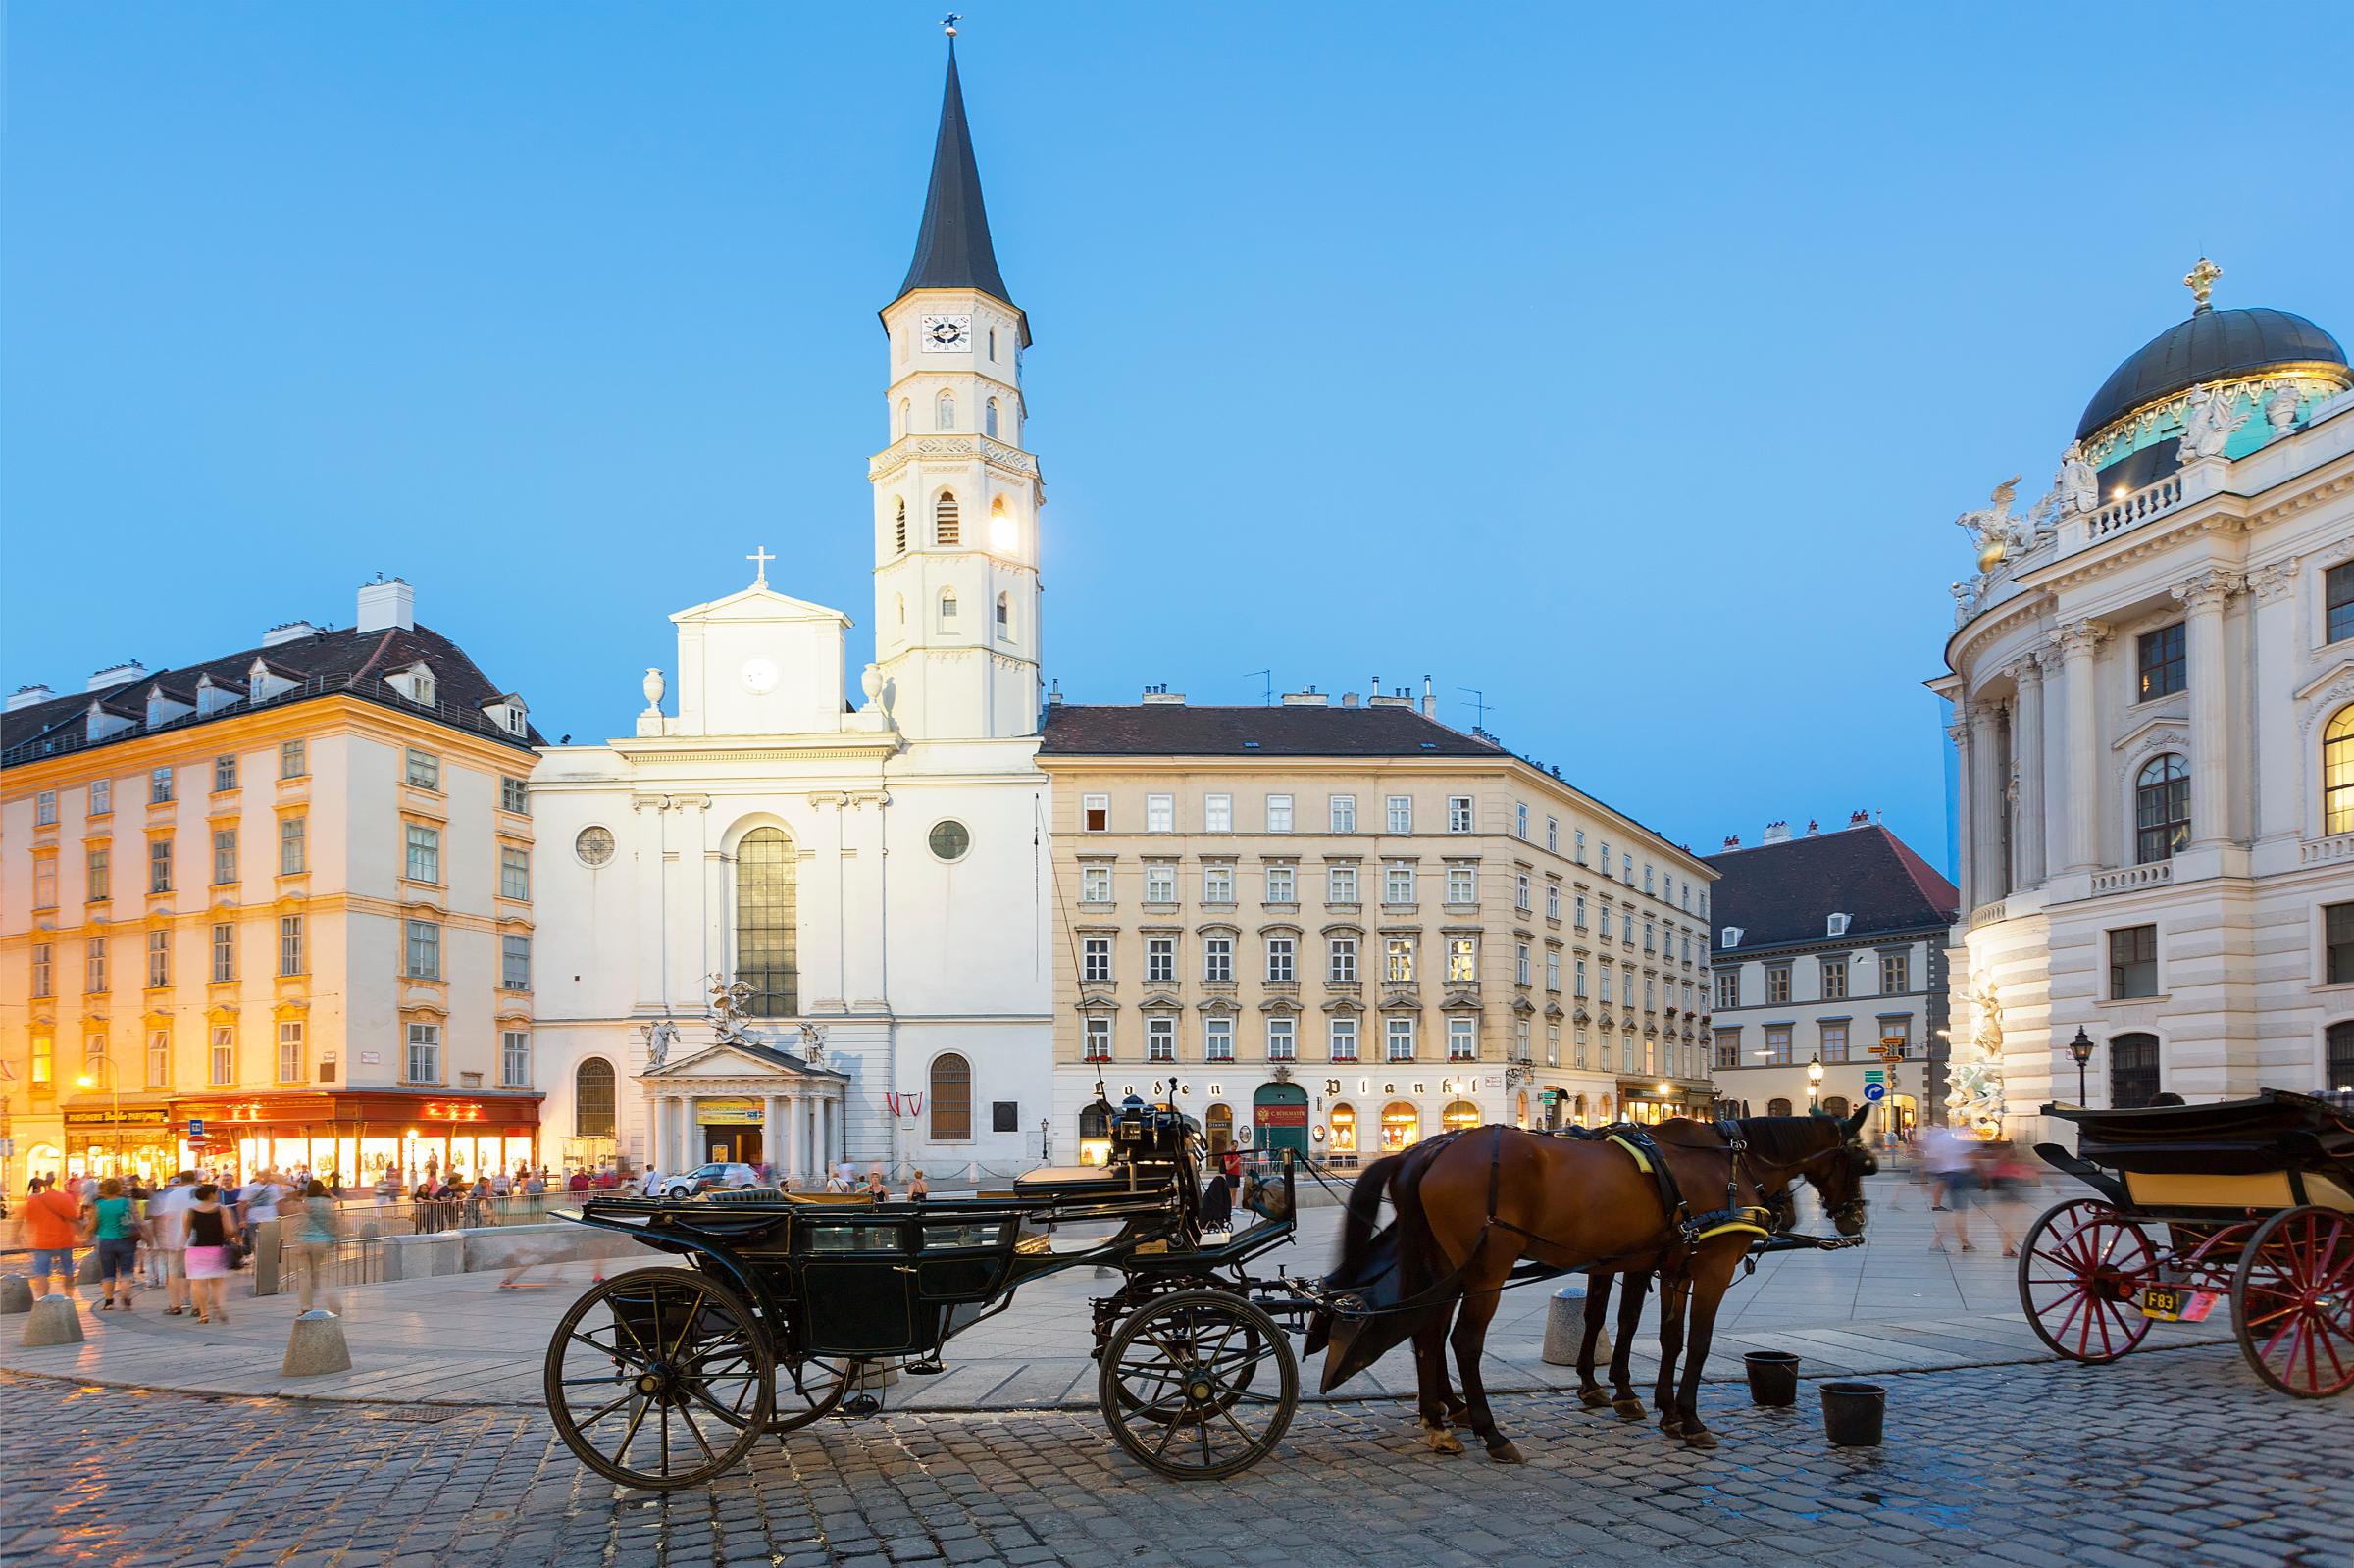 Horse carriage, Josefsplatz, Vienna